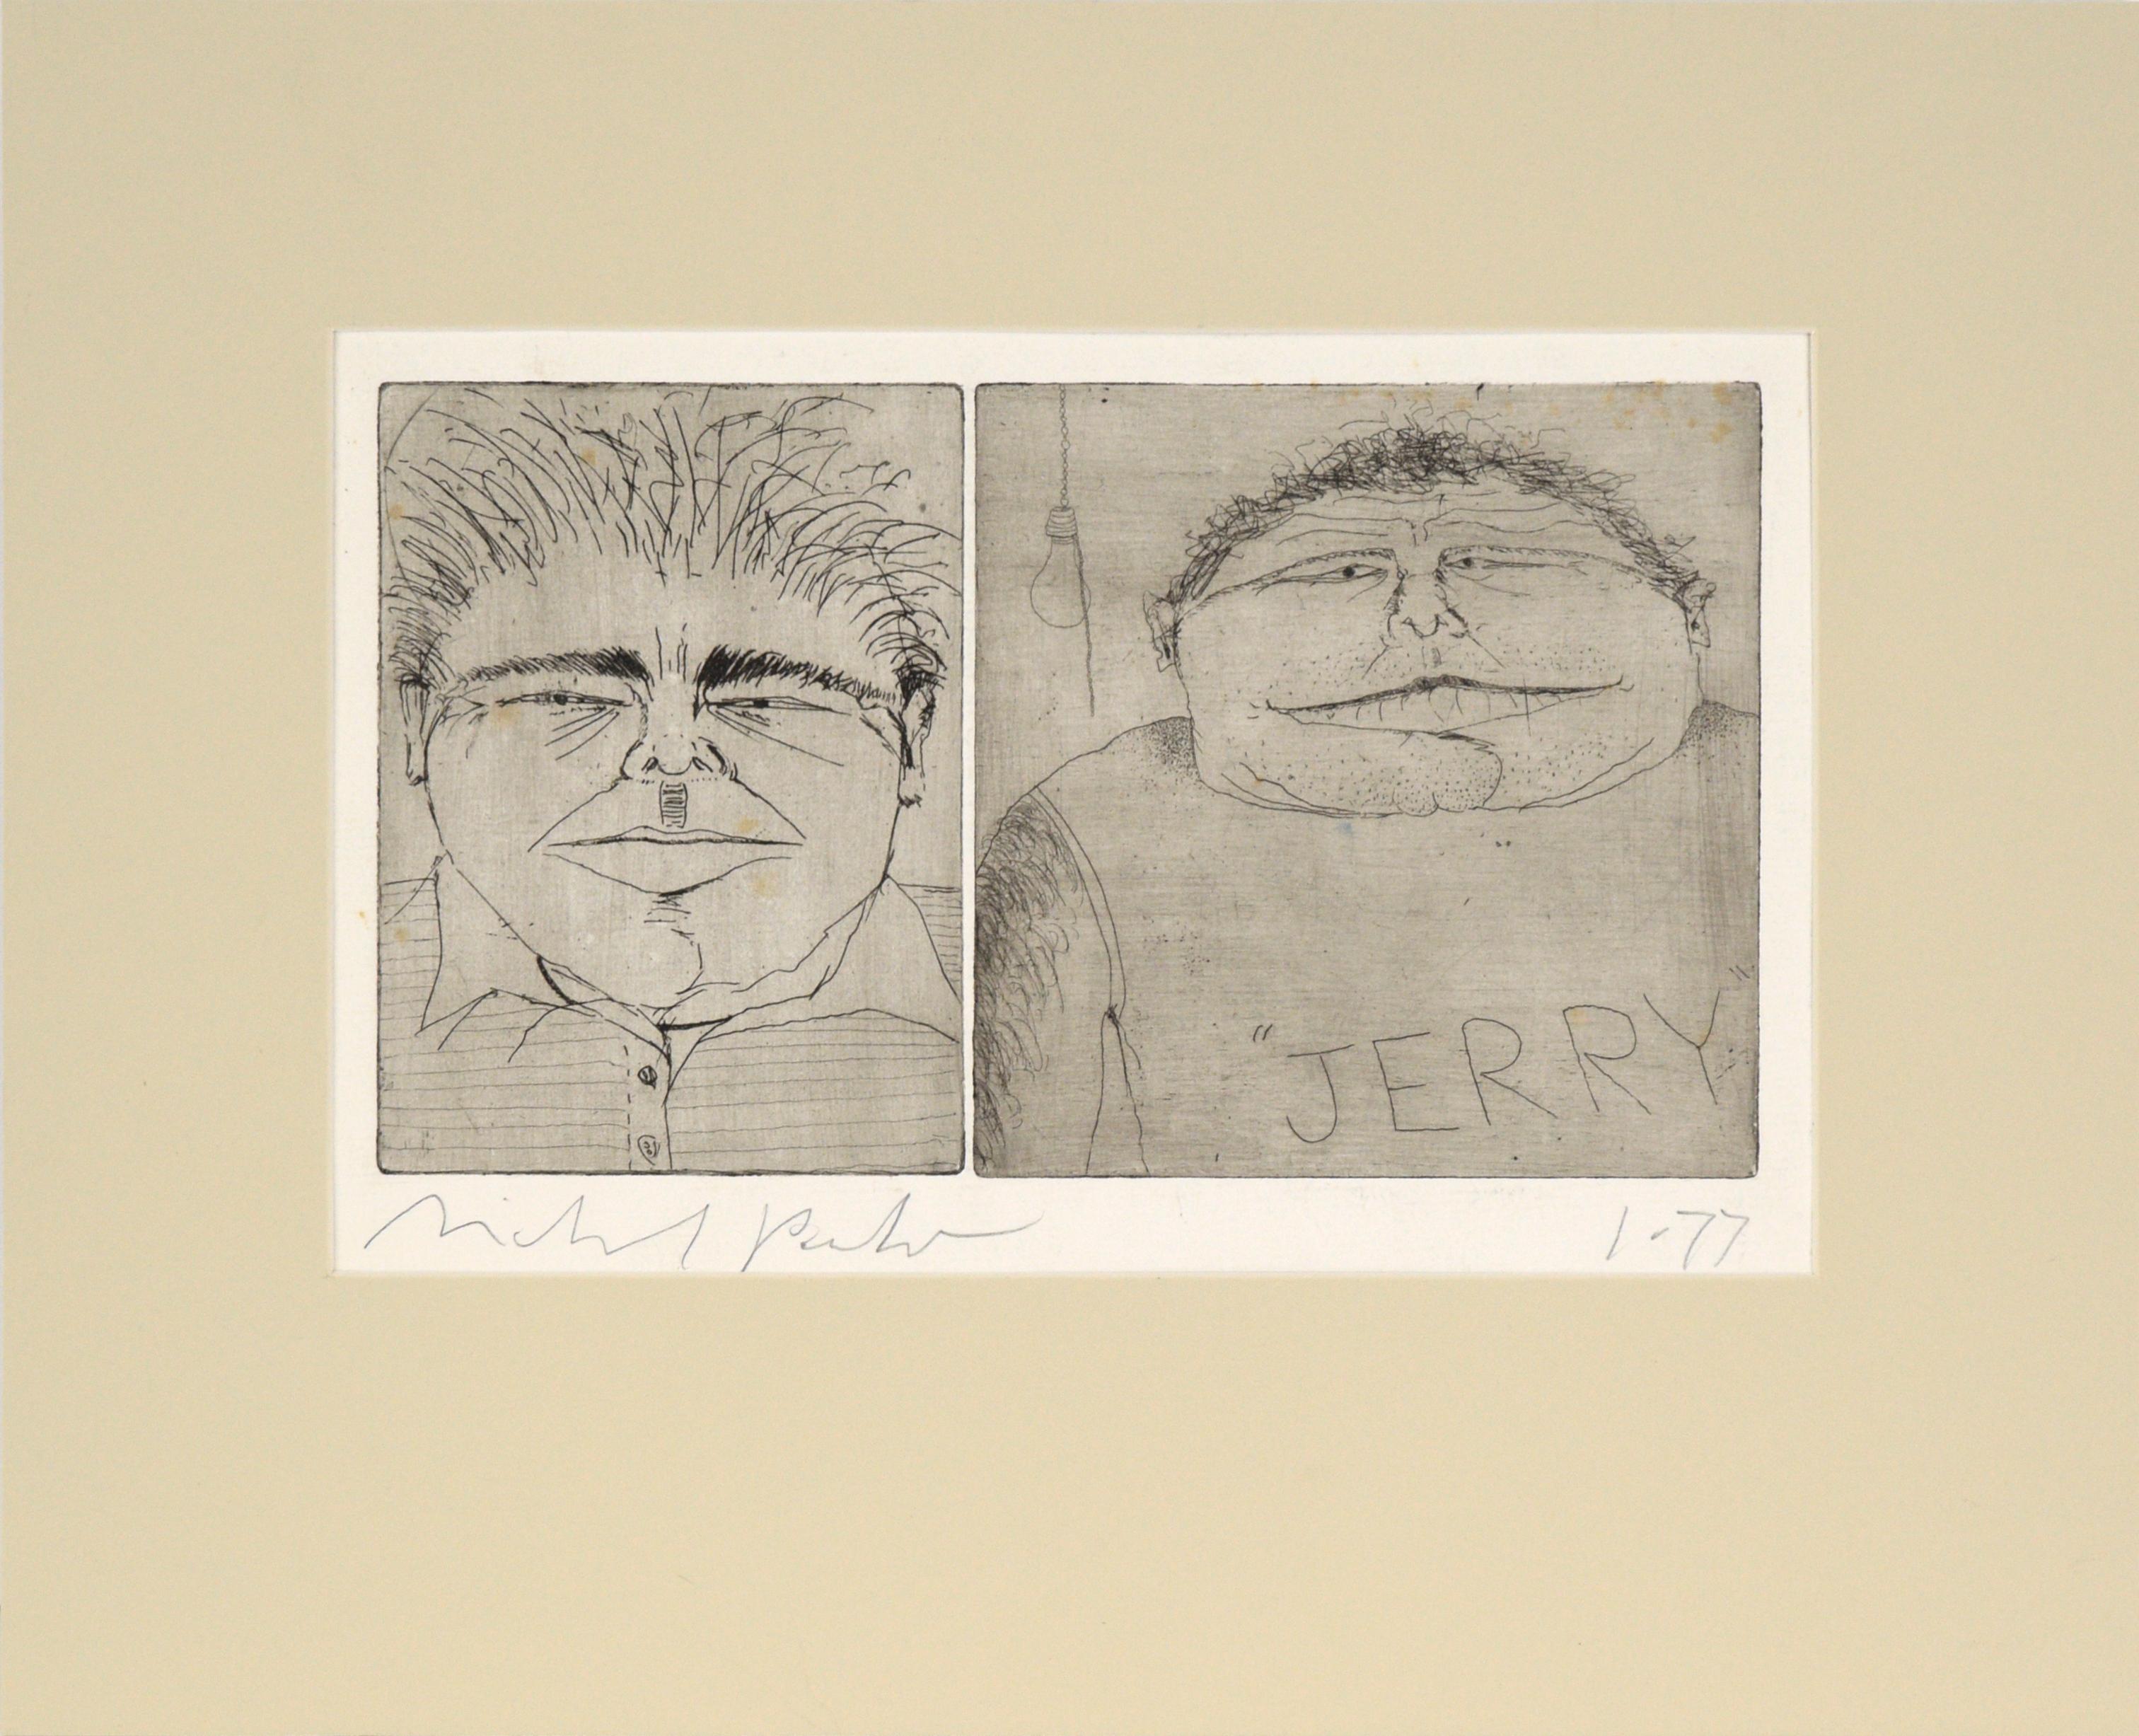 Michael Pauker  Figurative Print - "Jerry" - Caricature Portrait Etching 1977